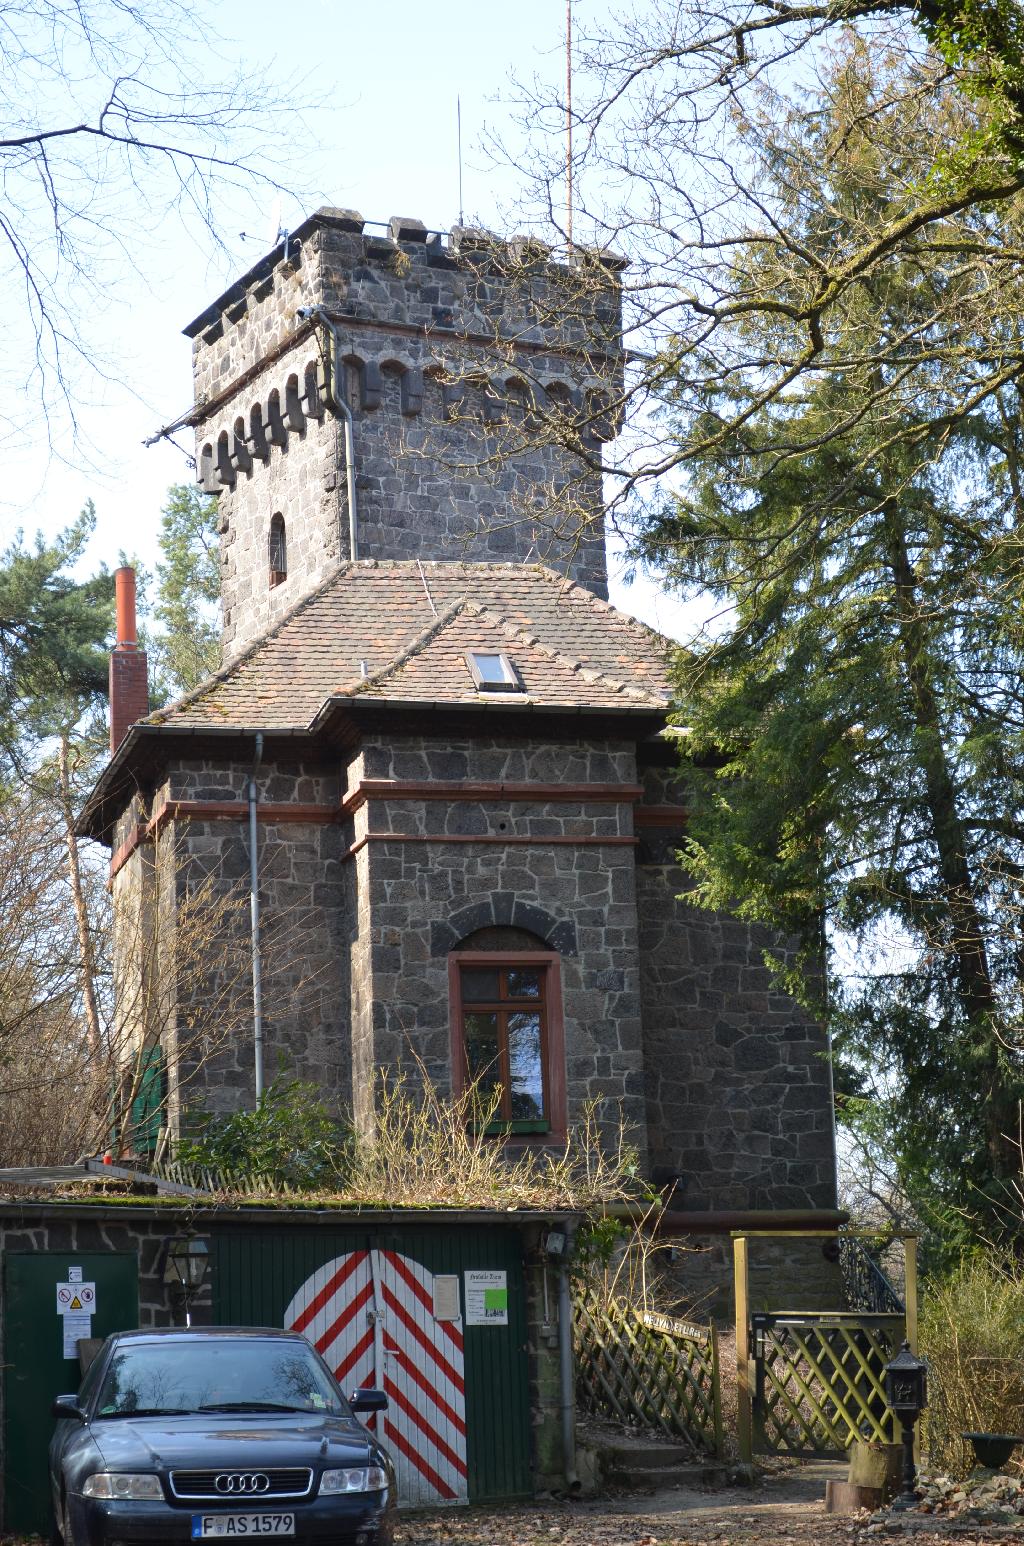 Neufville-Turm in Eppstein